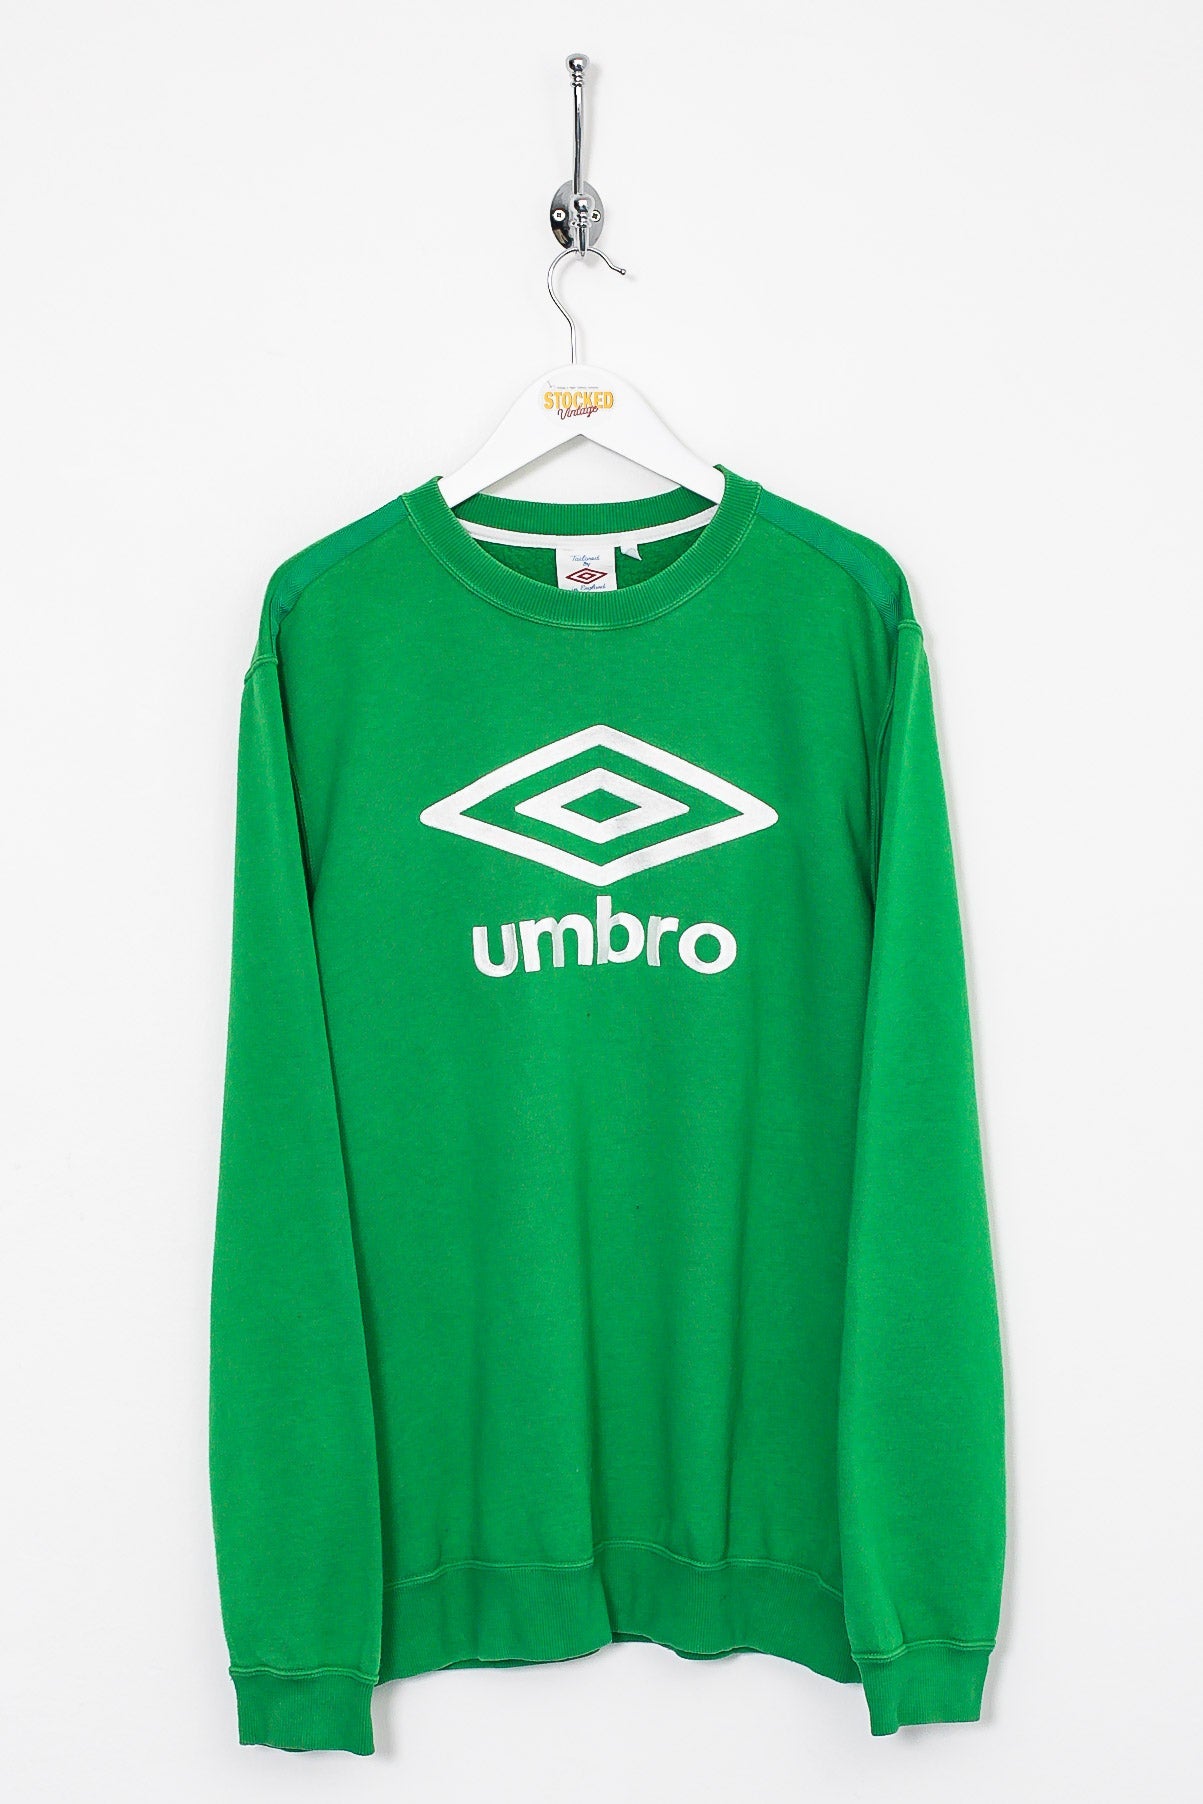 00s Umbro Sweatshirt (L) – Stocked Vintage